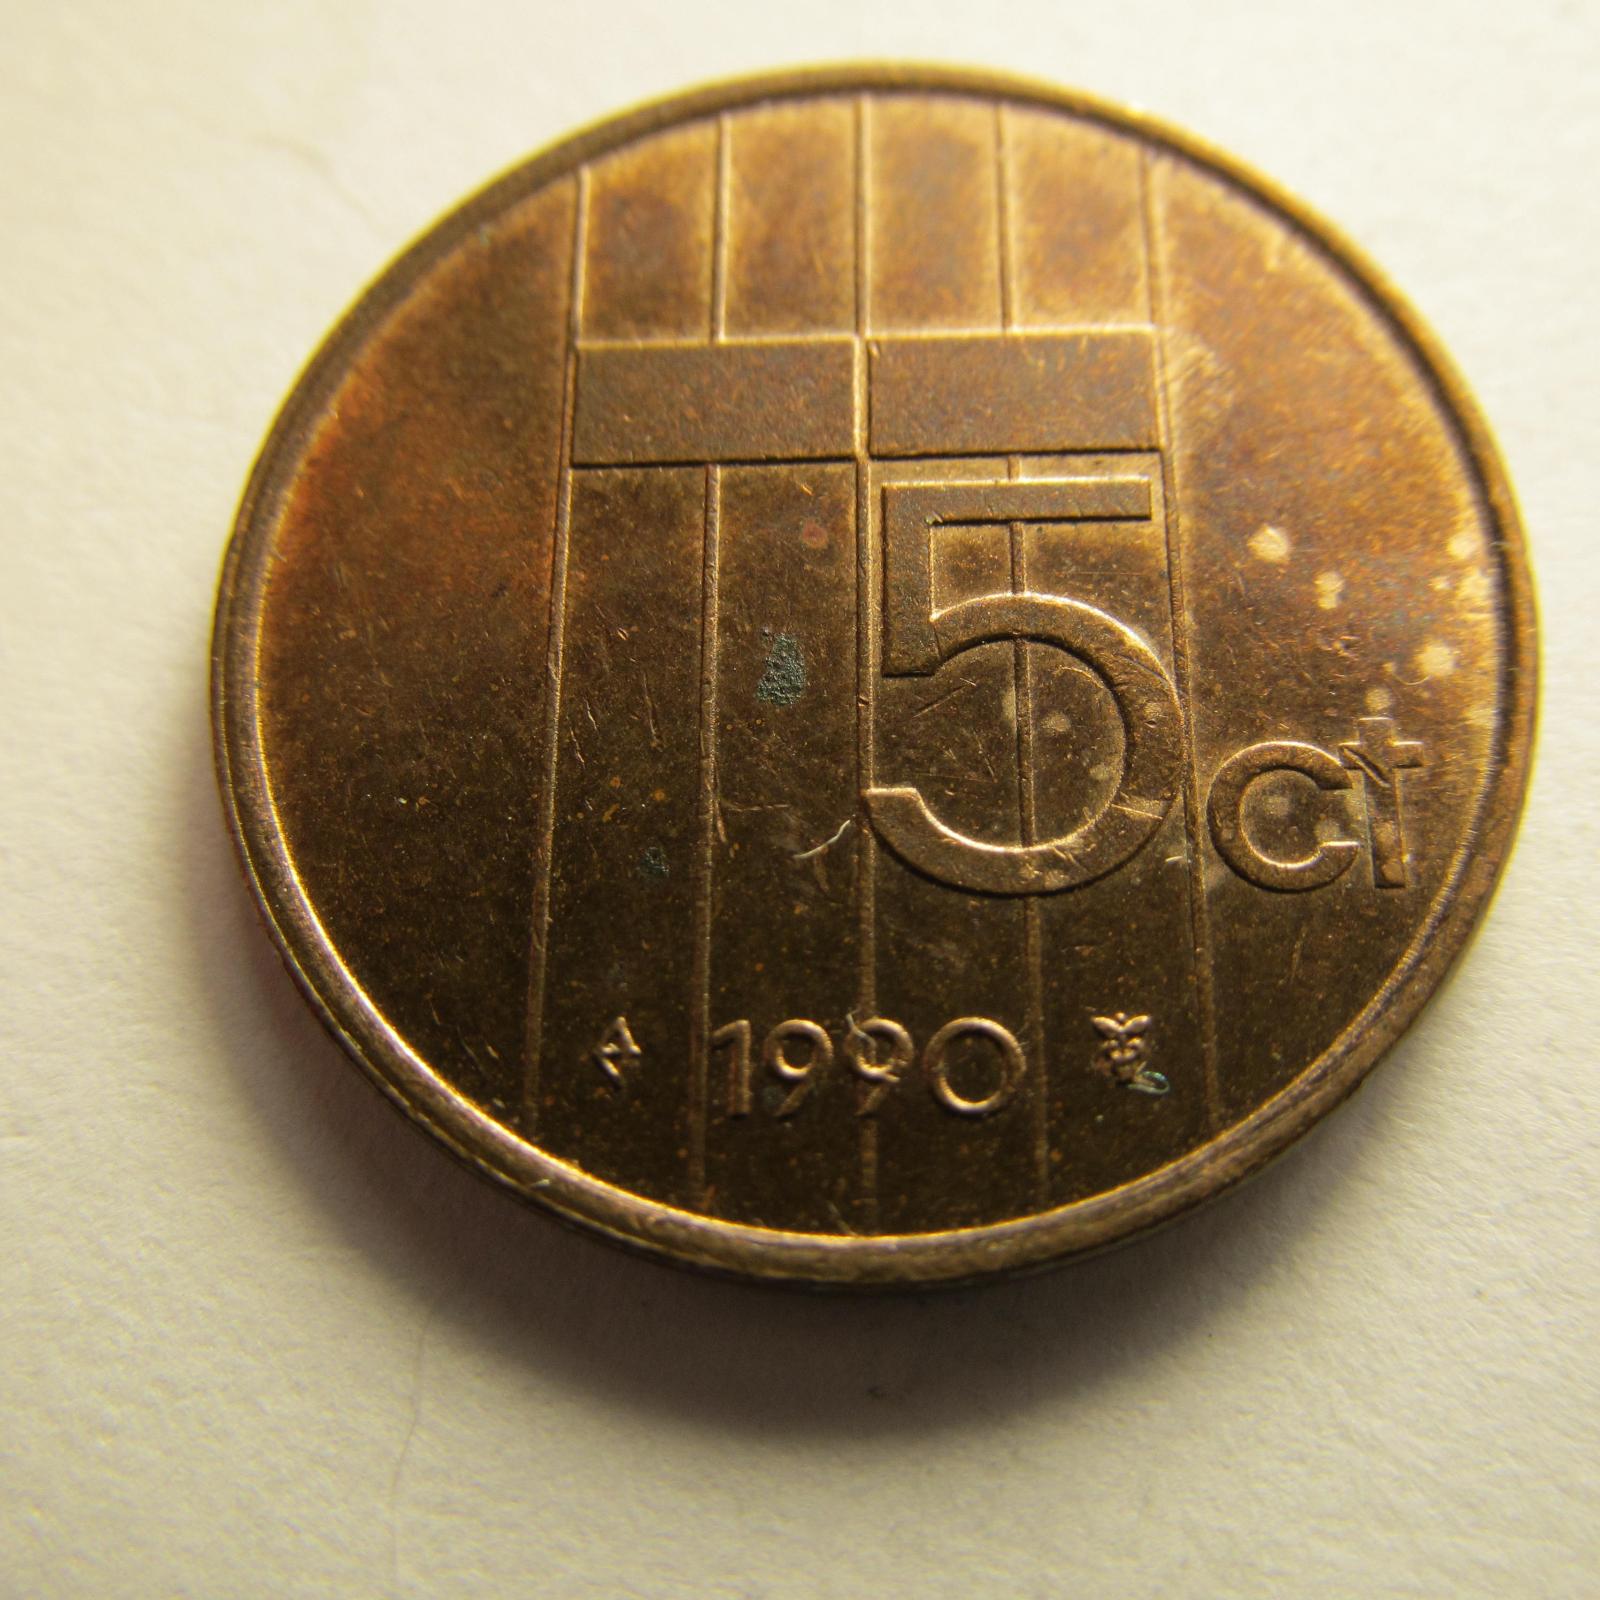 Nizozemsko - 5 cents z roku 1990 -2000, sada 11 kusů - Numismatika